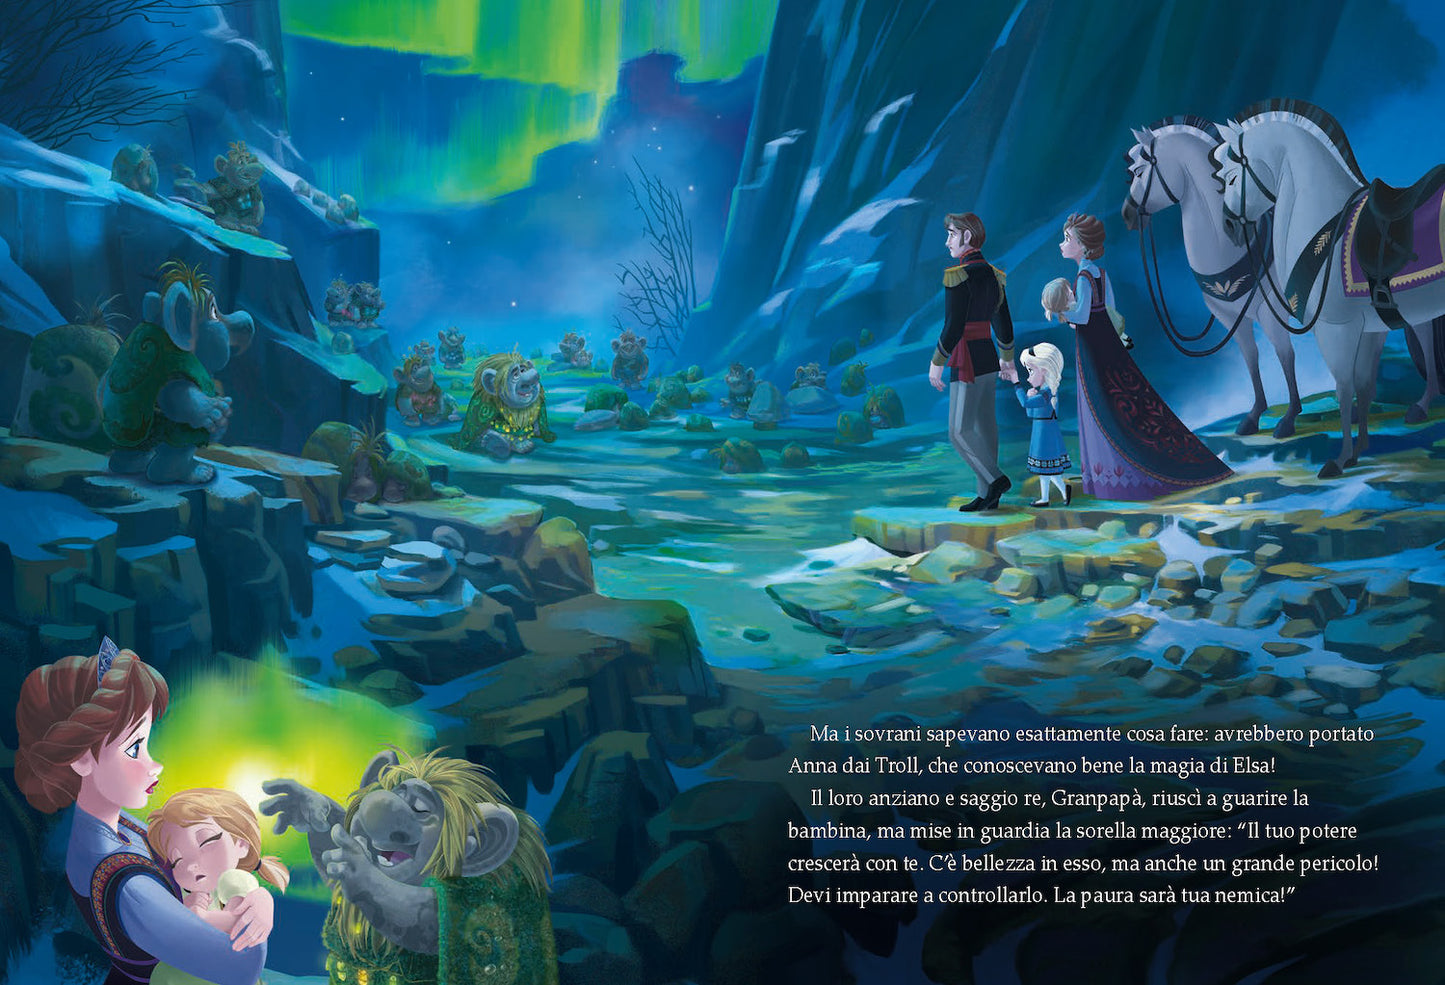 Frozen Speciale Anniversario Edizione limitata::Disney 100 Anni di meravigliose emozioni